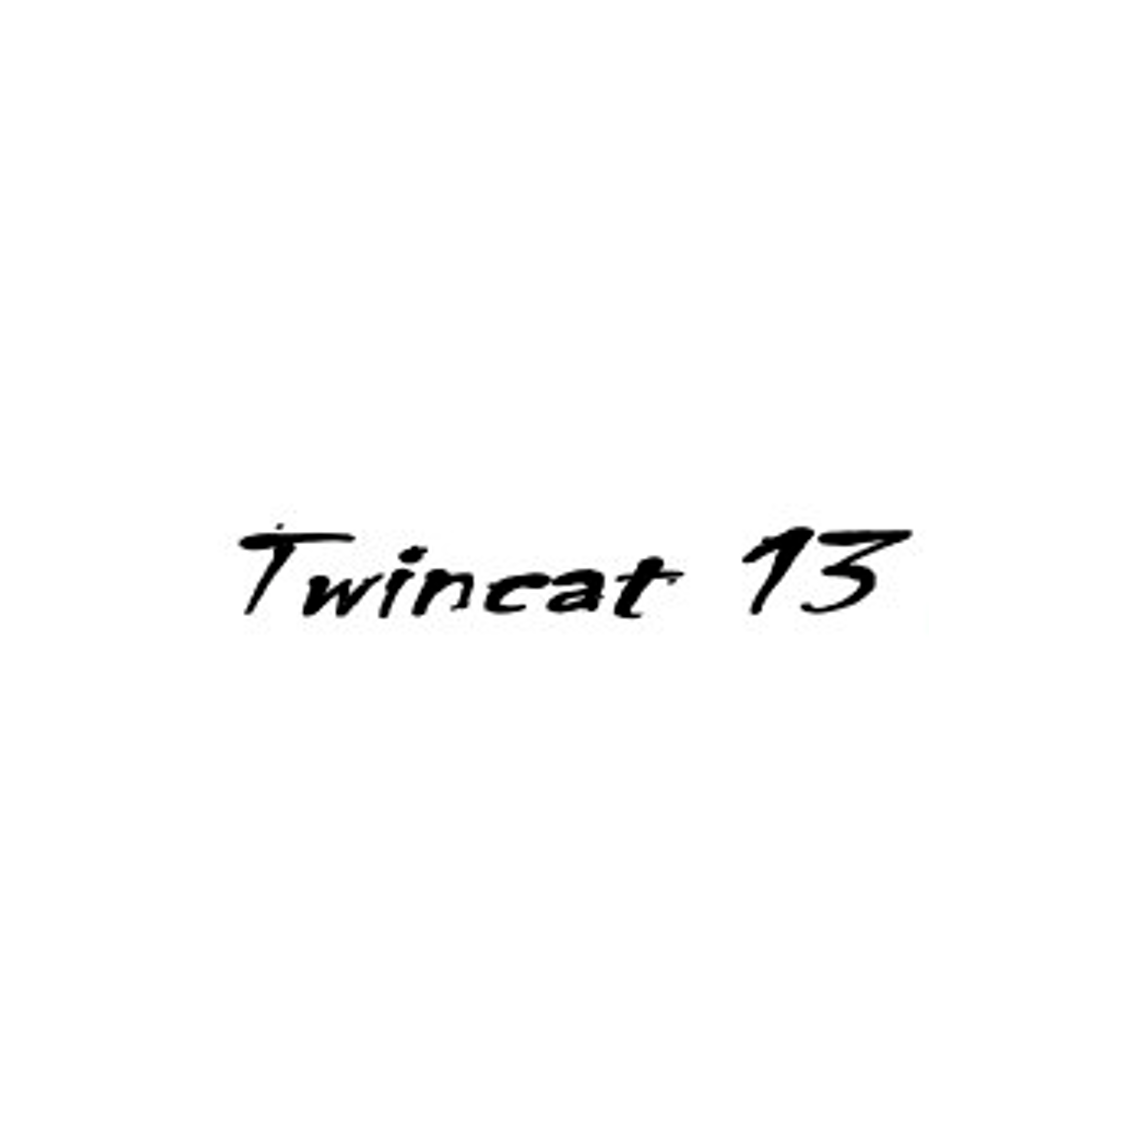 Compatible twincat 13